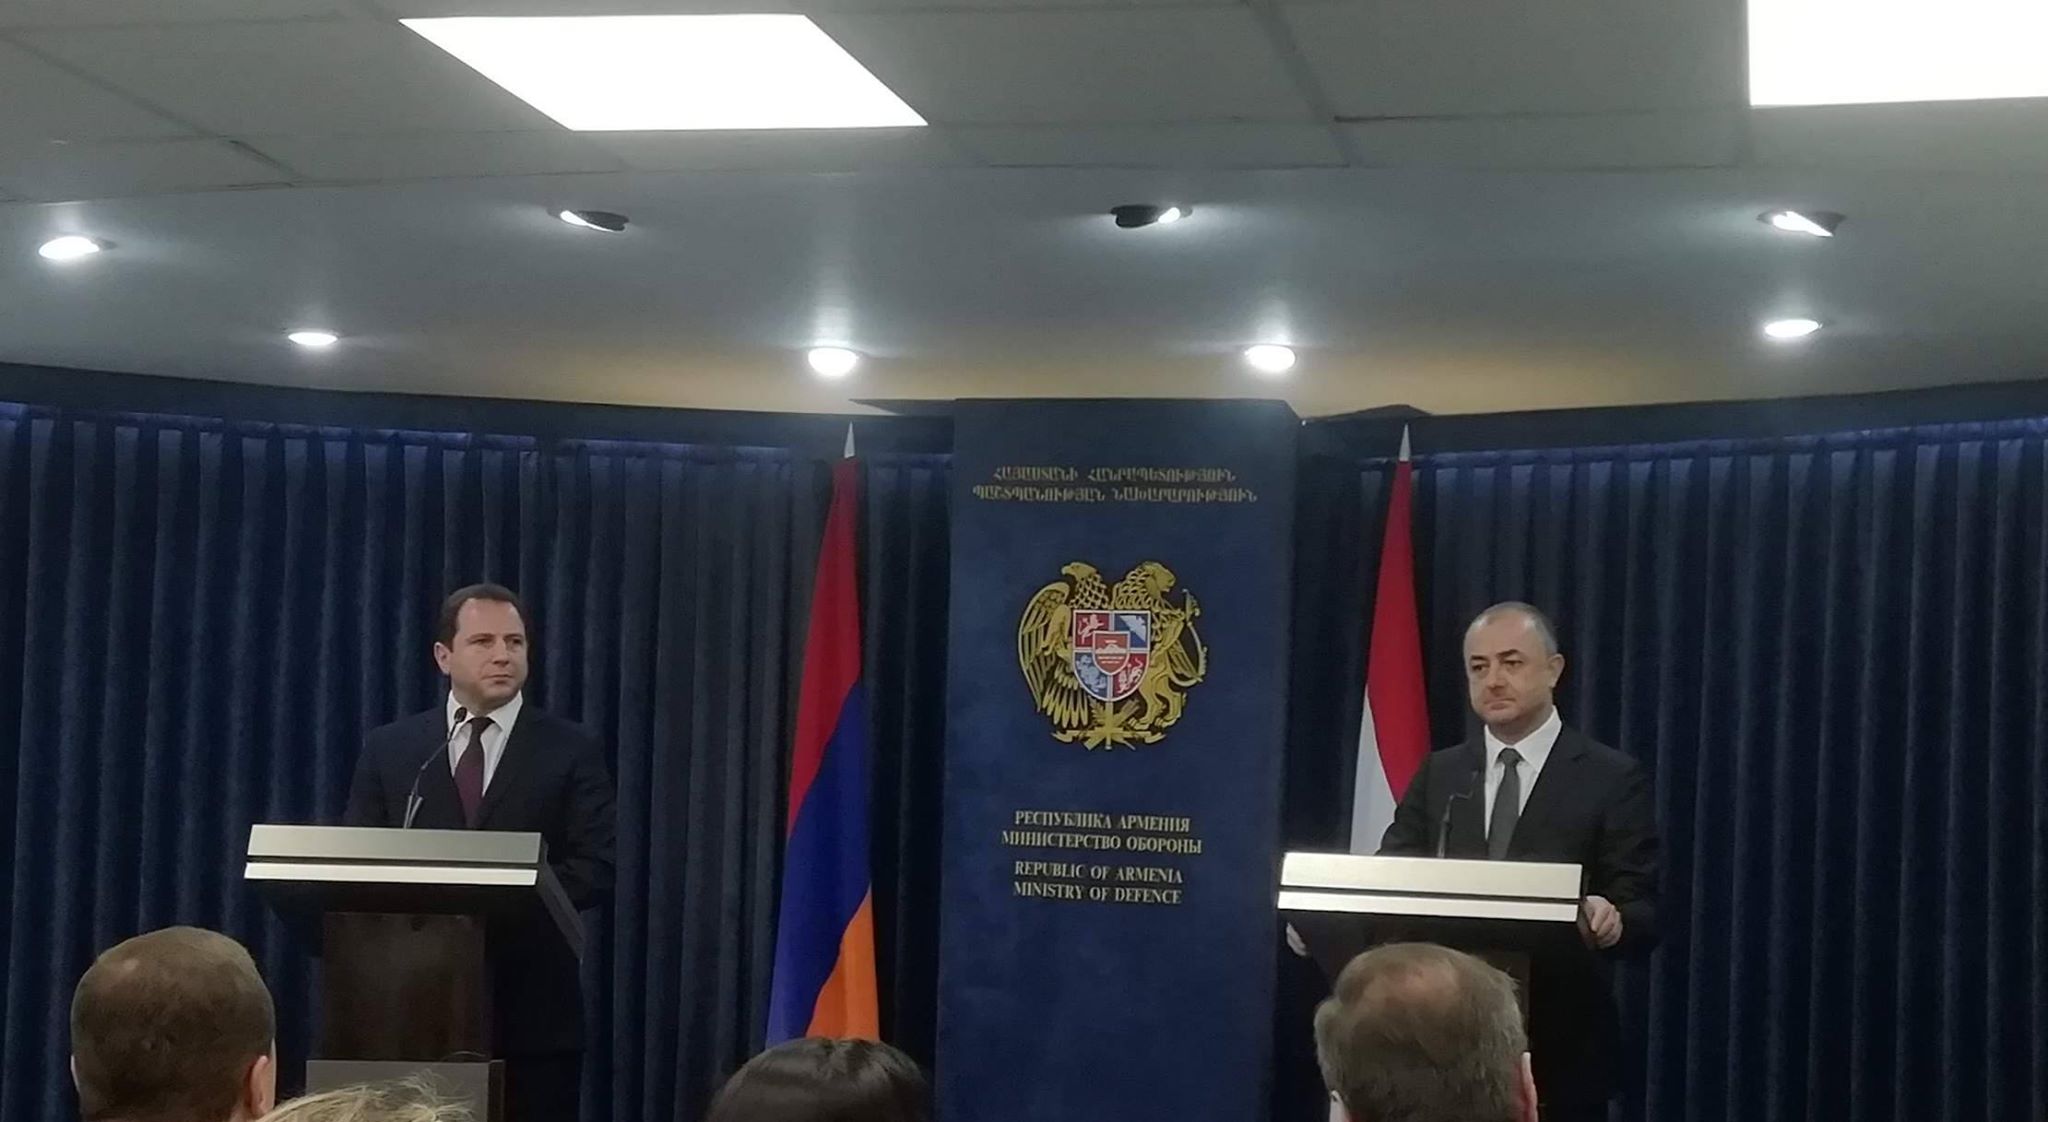 Lübnan Savunma Bakanı: "Ben bakan olarak ilk defa Ermenistan’a geliyorum. Ailemin temasları çok derin”